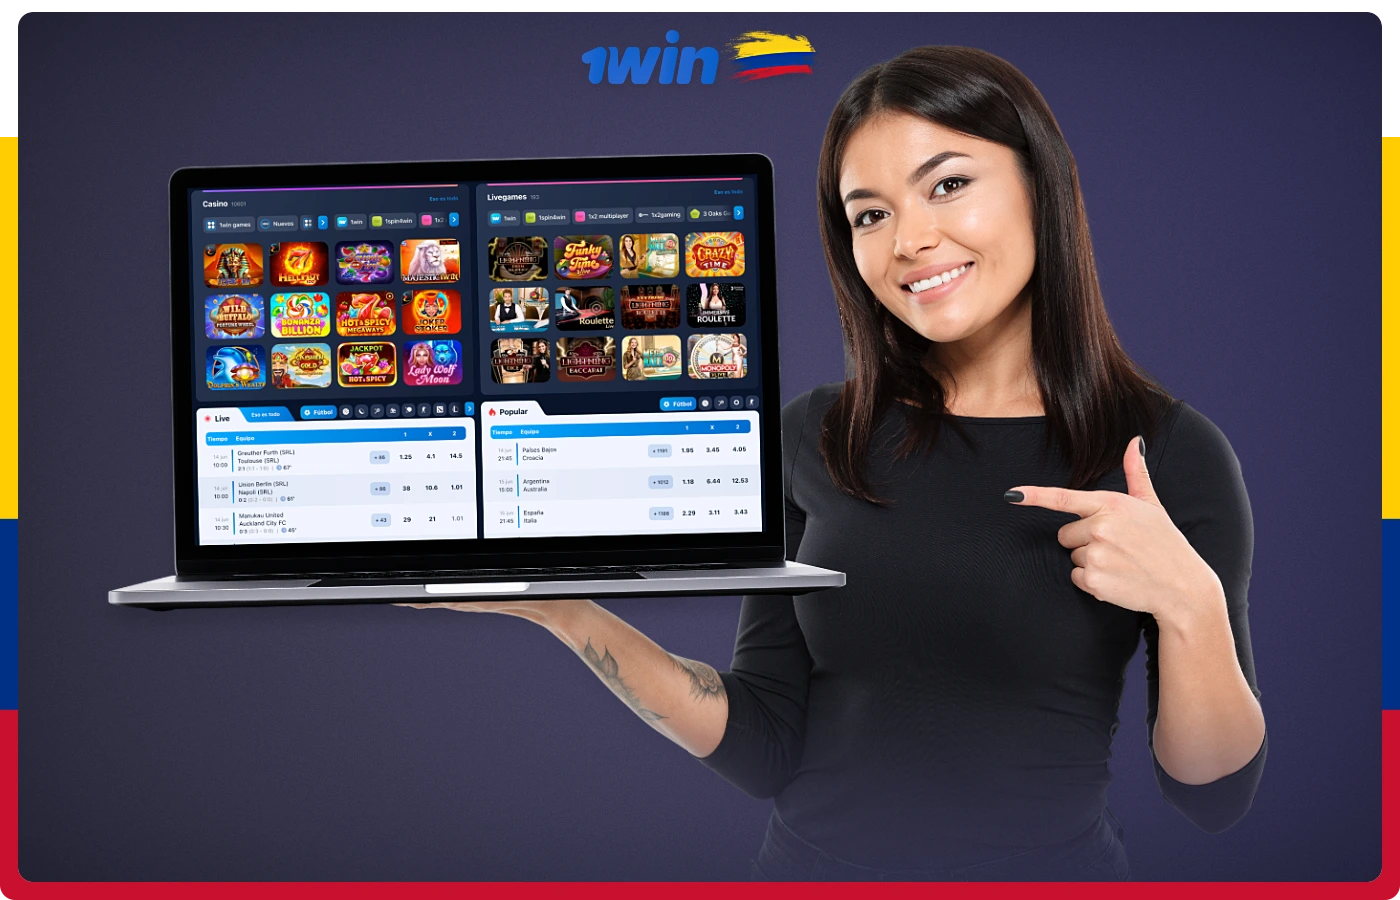 1win ofrece a sus usuarios colombianos juegos con licencia, una amplia gama de opciones de apuestas, una aplicación móvil y mucho más